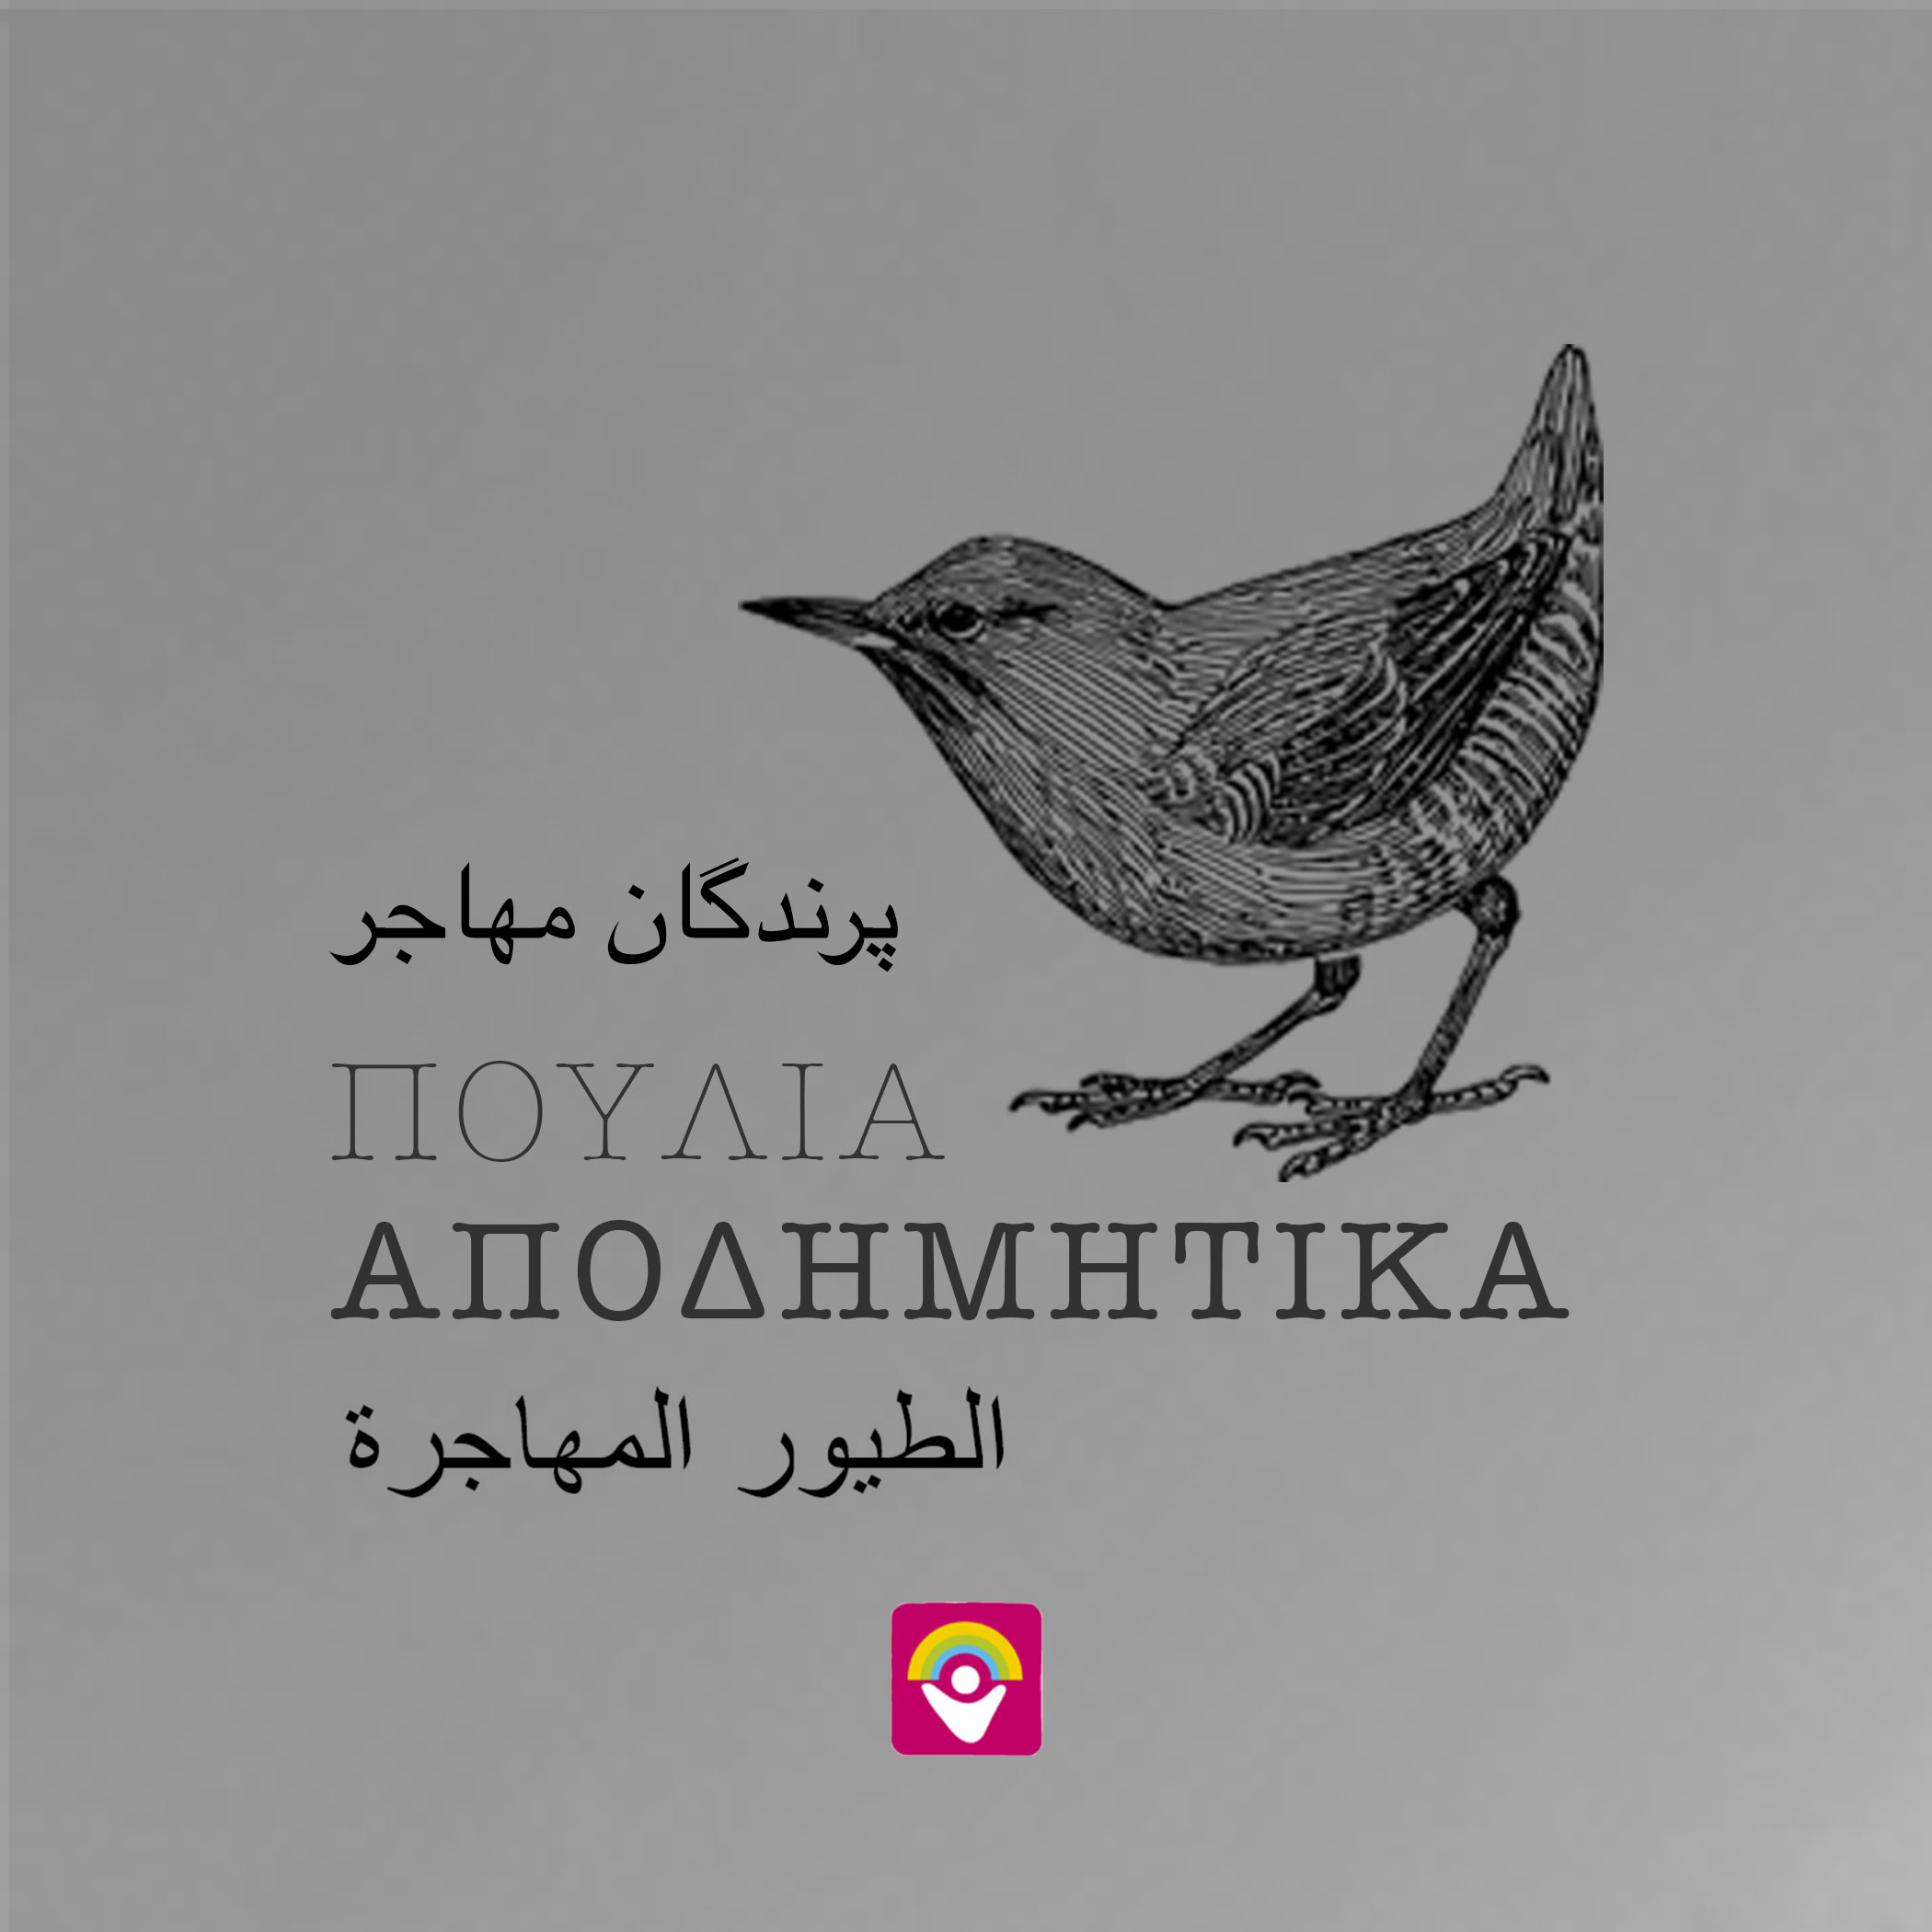 Το 9ο φύλλο της εφημερίδας «Αποδημητικά Πουλιά» στην αγγλική γλώσσα